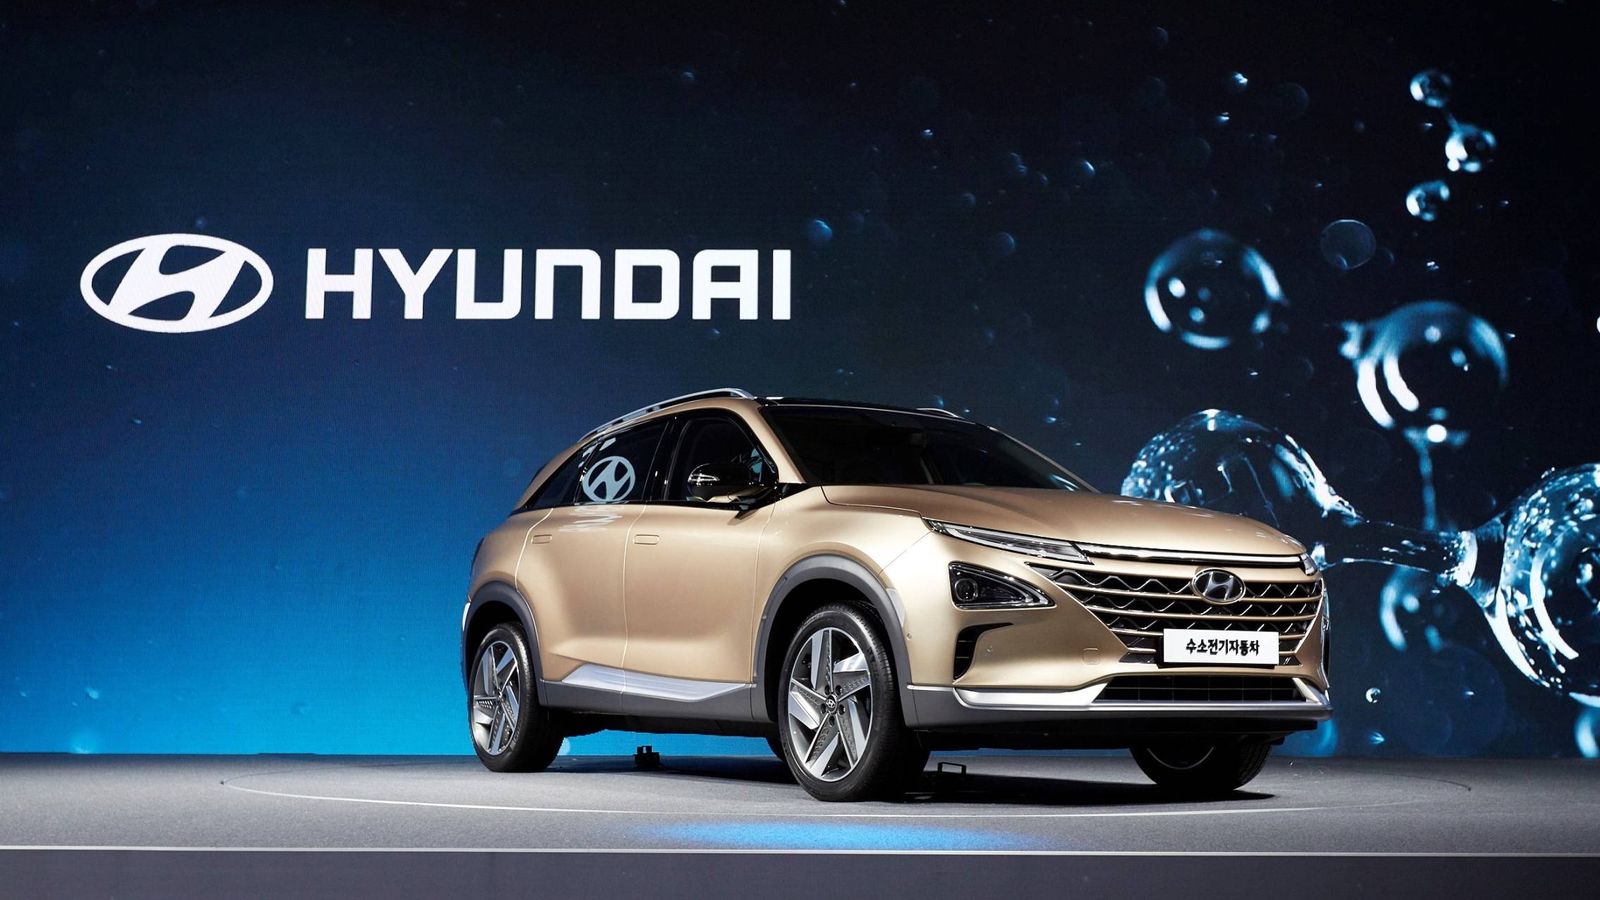 Foto: Hyundai Nexo de hidrógeno, una gran apuesta de futuro de la marca coreana a nivel mundial.